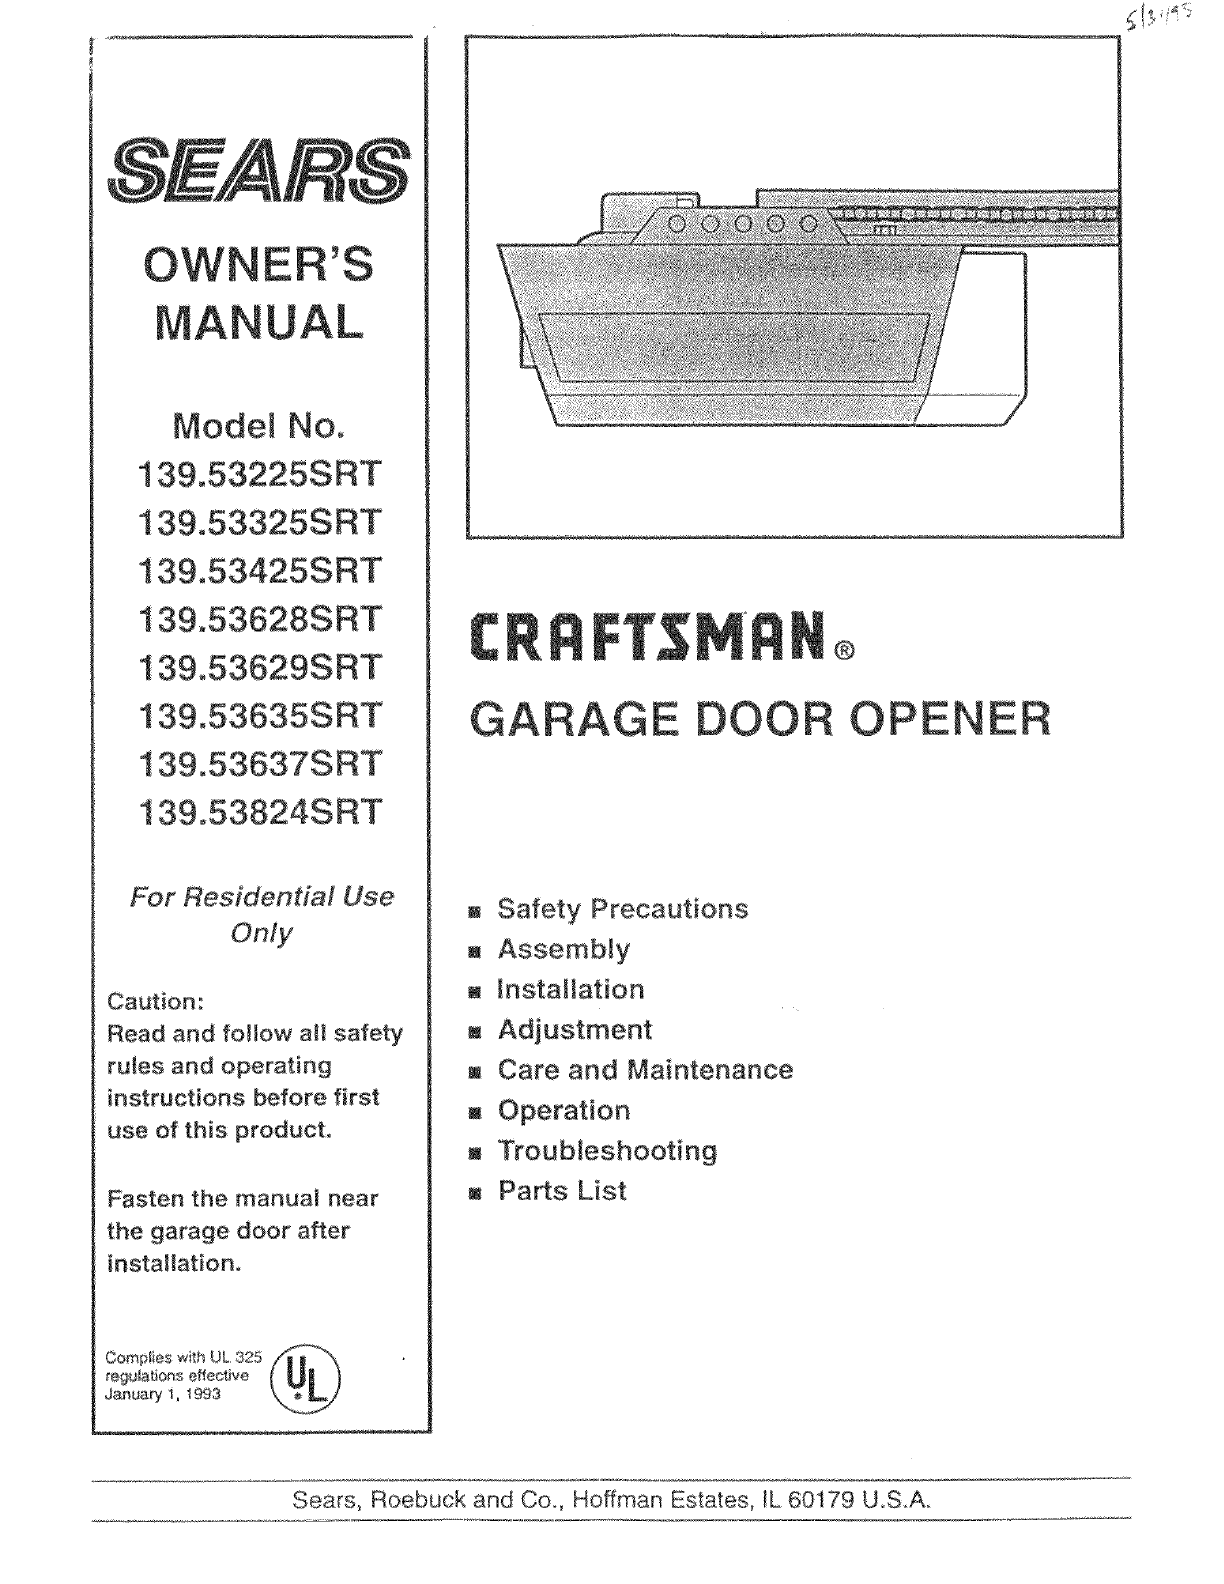 New Wiring Diagram Garage Door Opener Sensors Diagram Diagramsample Diagramtemplate Wiri Liftmaster Garage Door Opener Chamberlain Garage Door Garage Doors